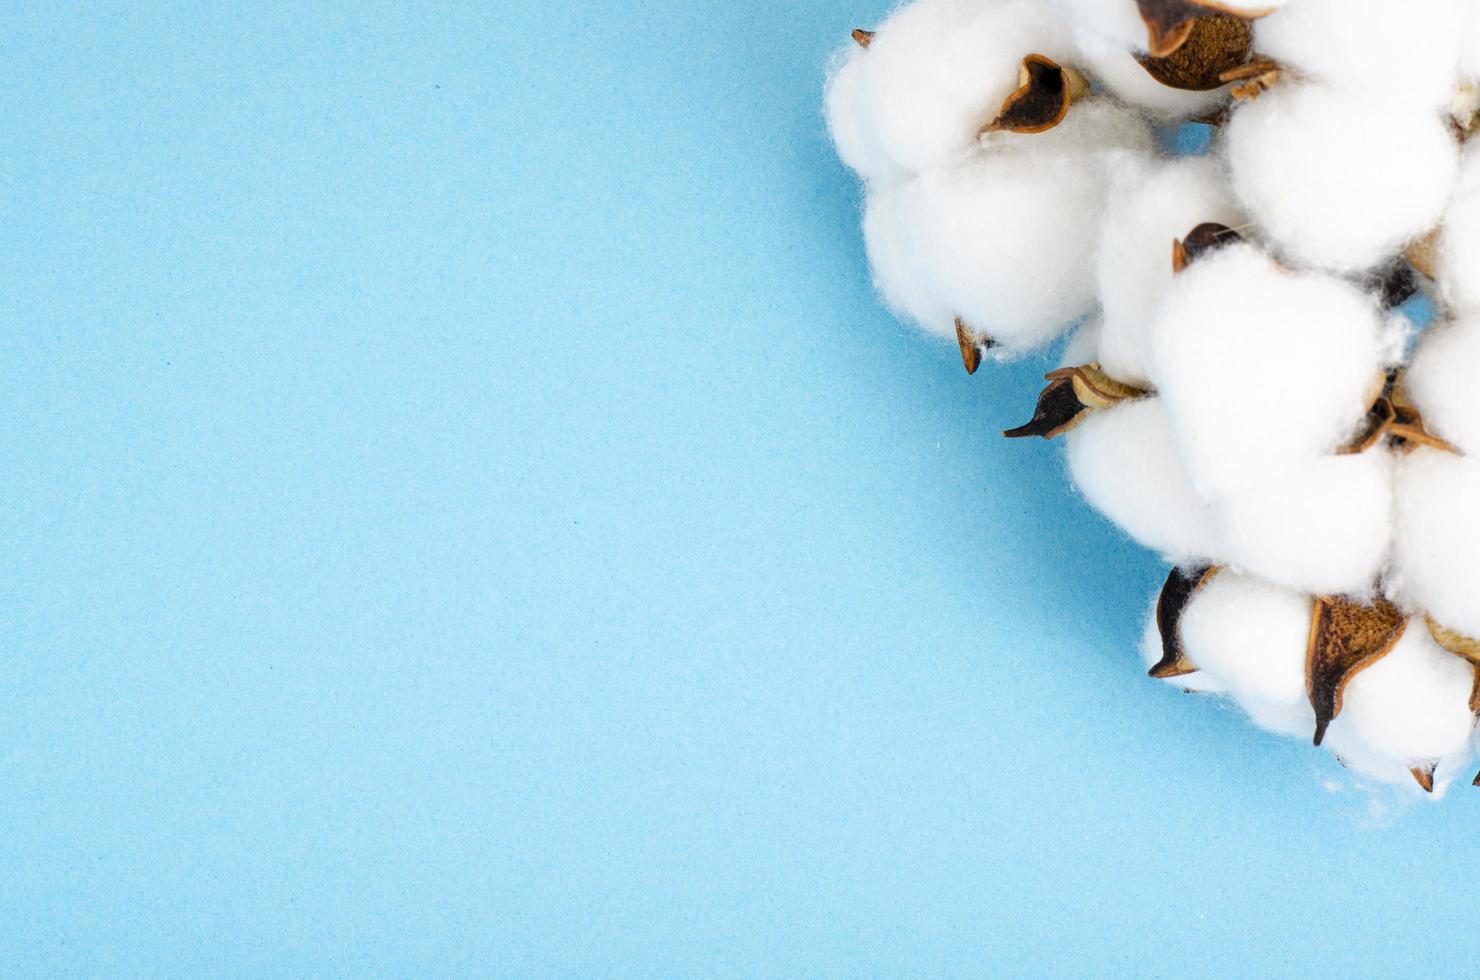 delicati fiori di cotone bianco soffice su sfondo di carta blu pastello, vista dall'alto. fibra organica naturale, materie prime per la fabbricazione del tessuto. foto in studio